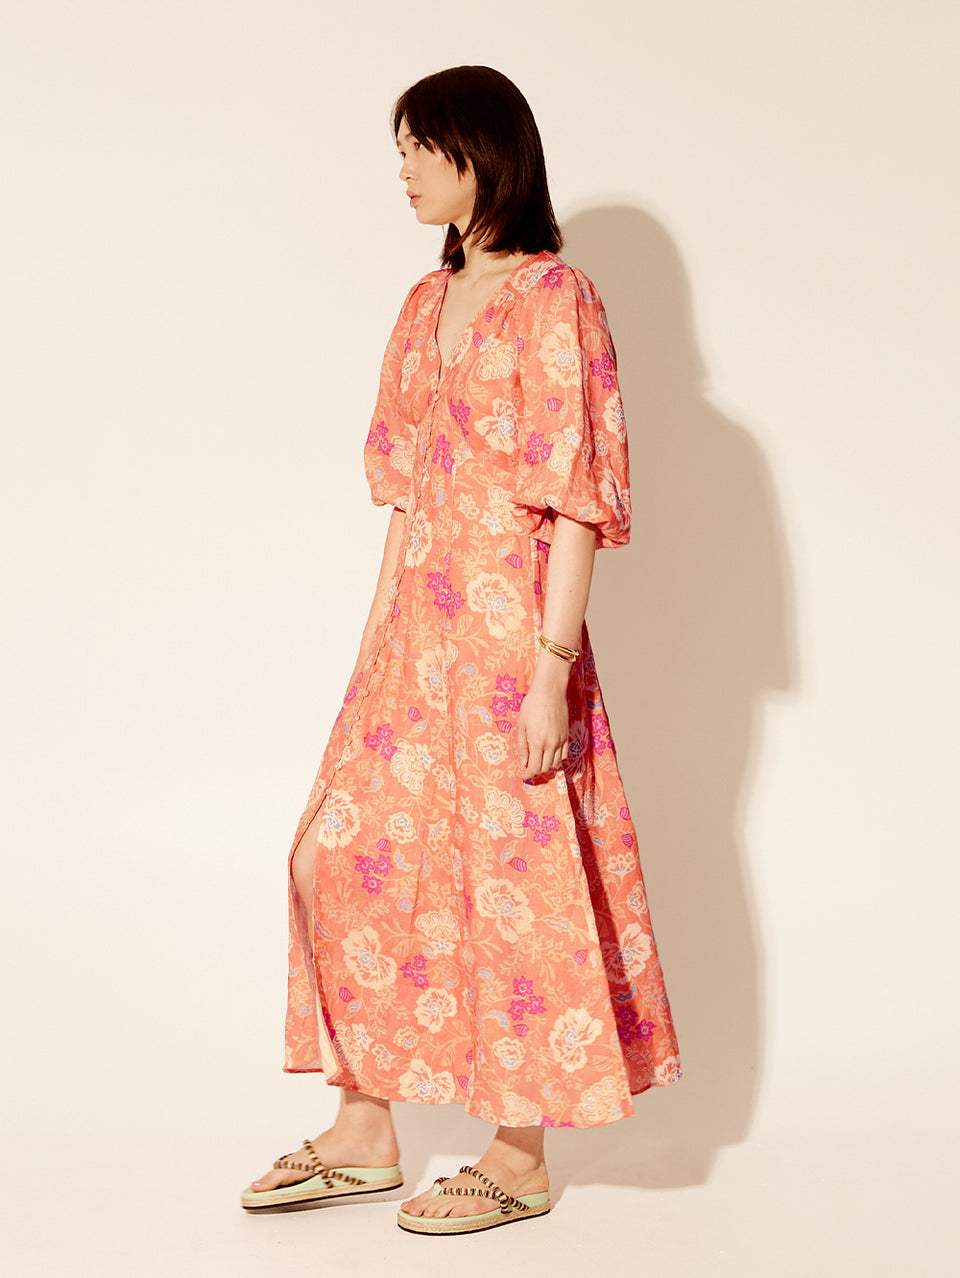 Rosa Maxi Dress KIVARI | Model wears pink floral dress side view